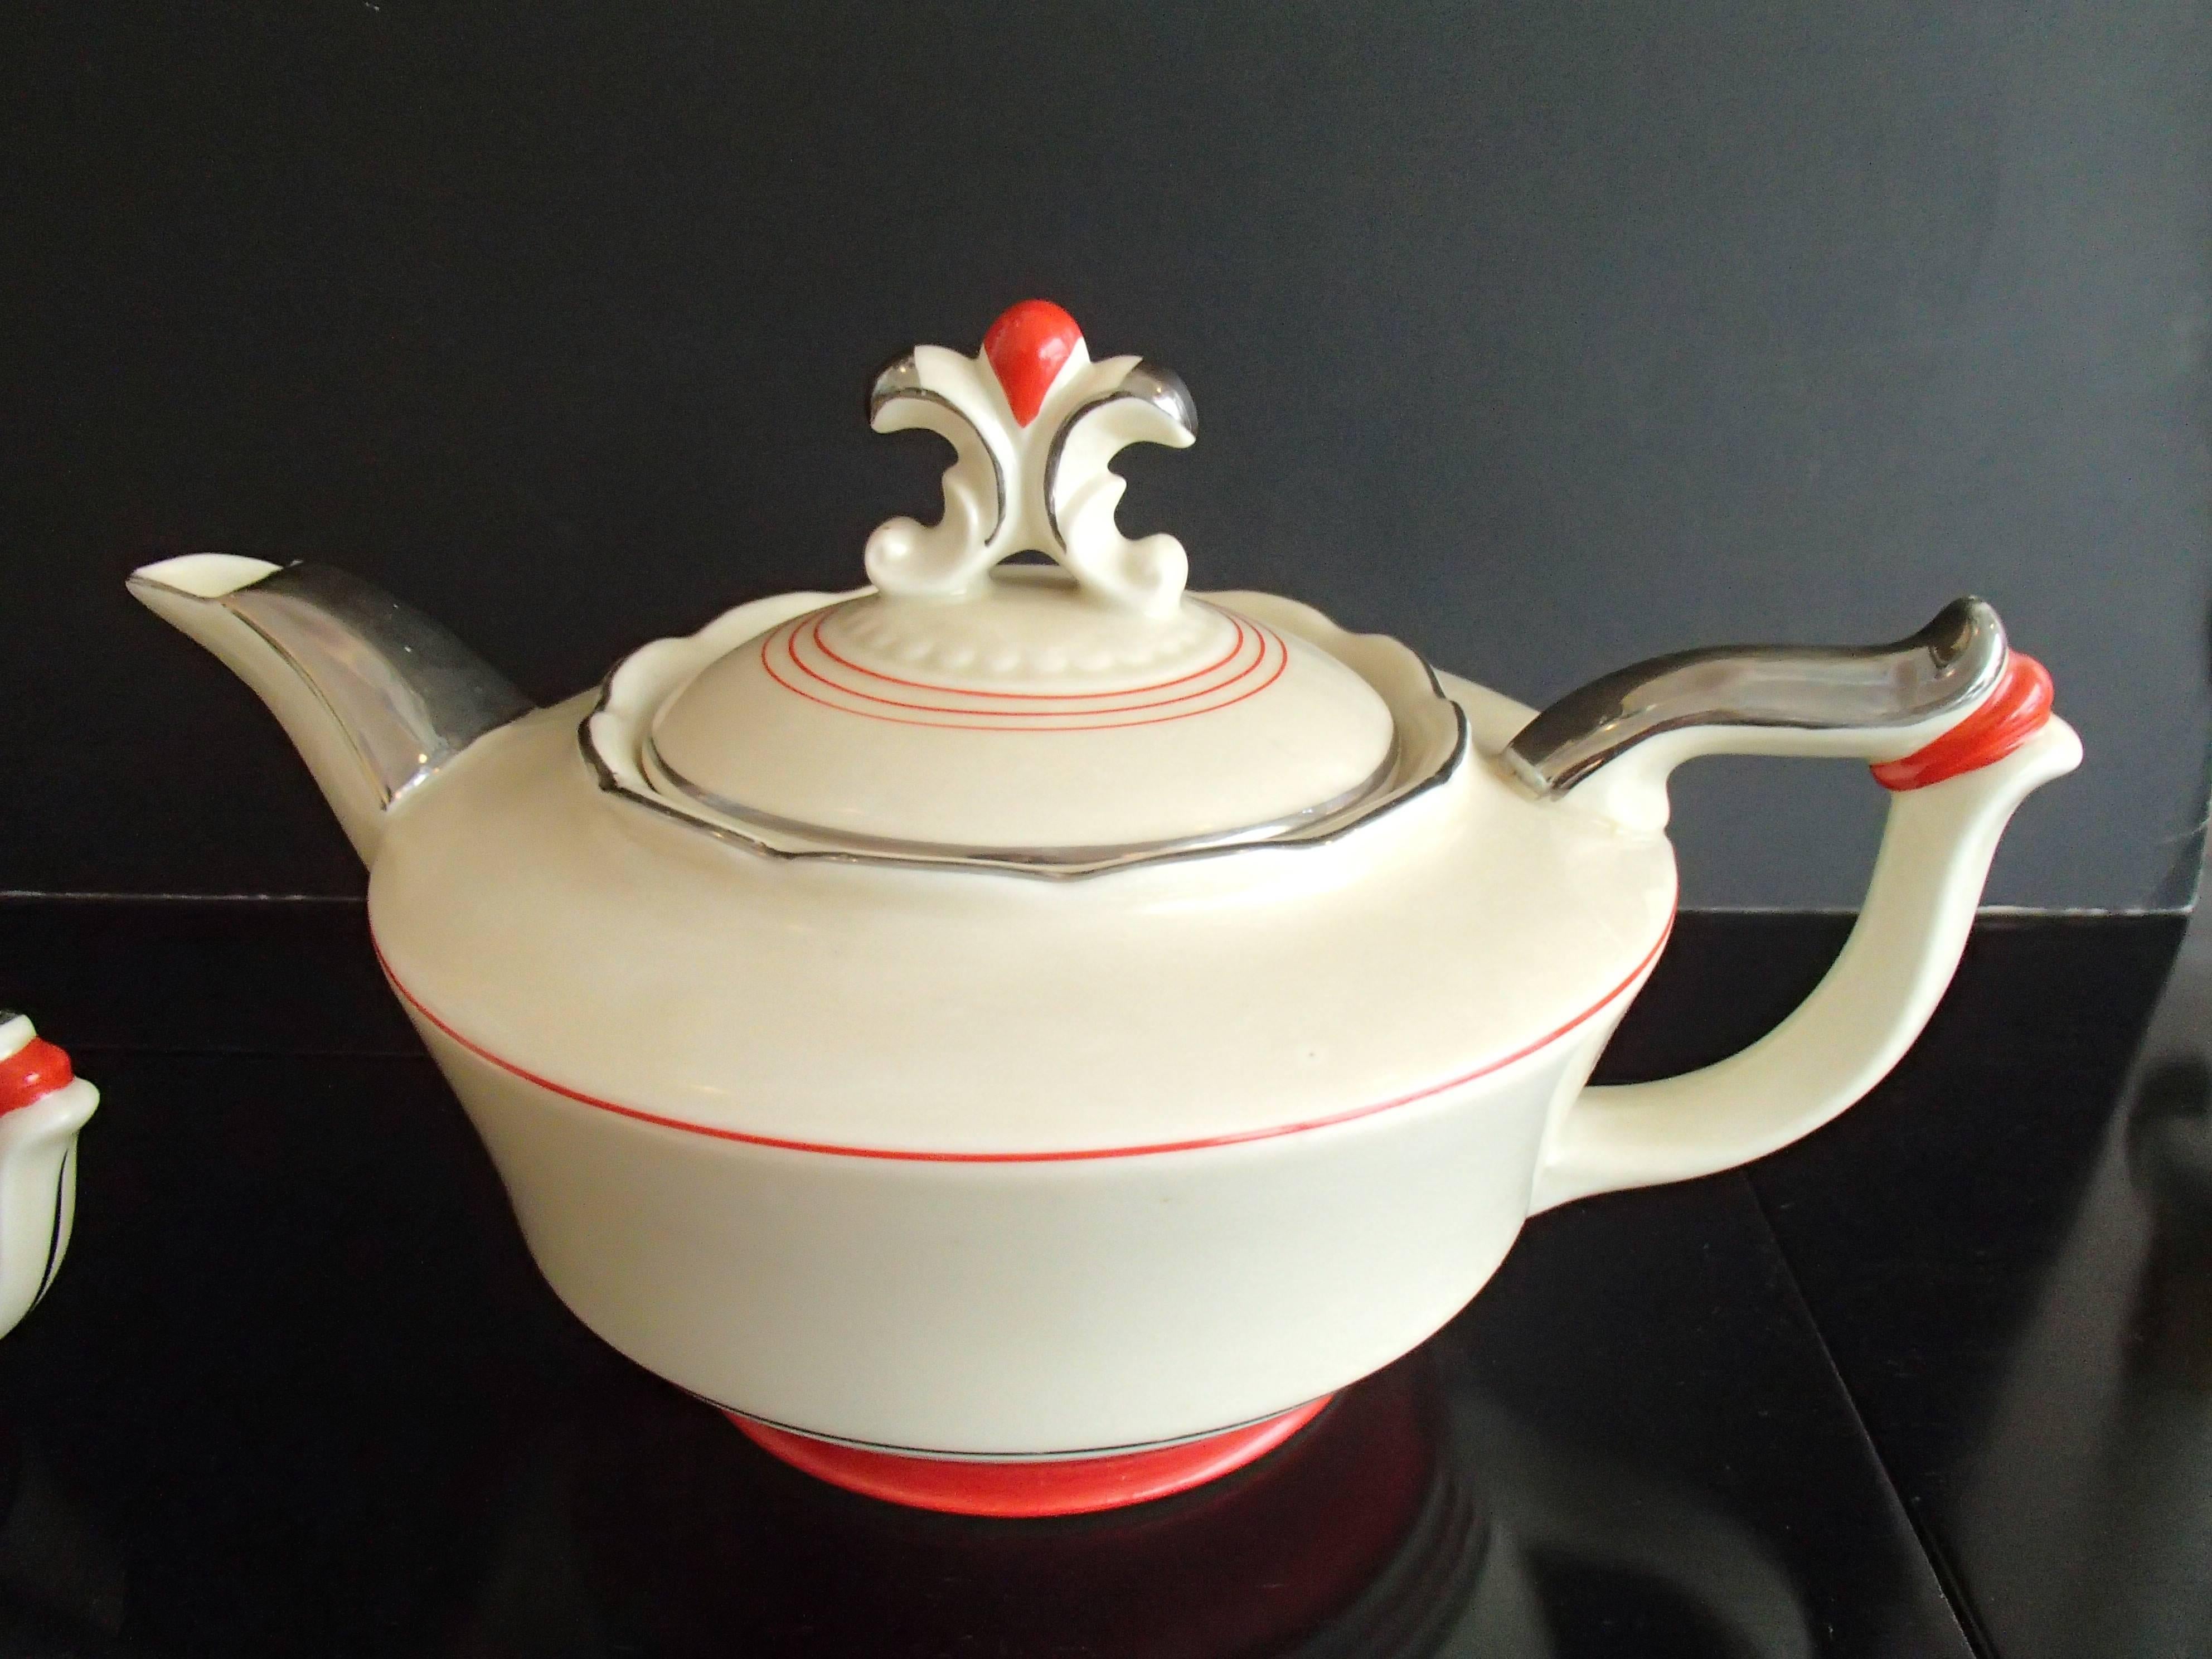 Art Deco tête-à-tête tea set Karlsbad red silver on ivory porcelain.